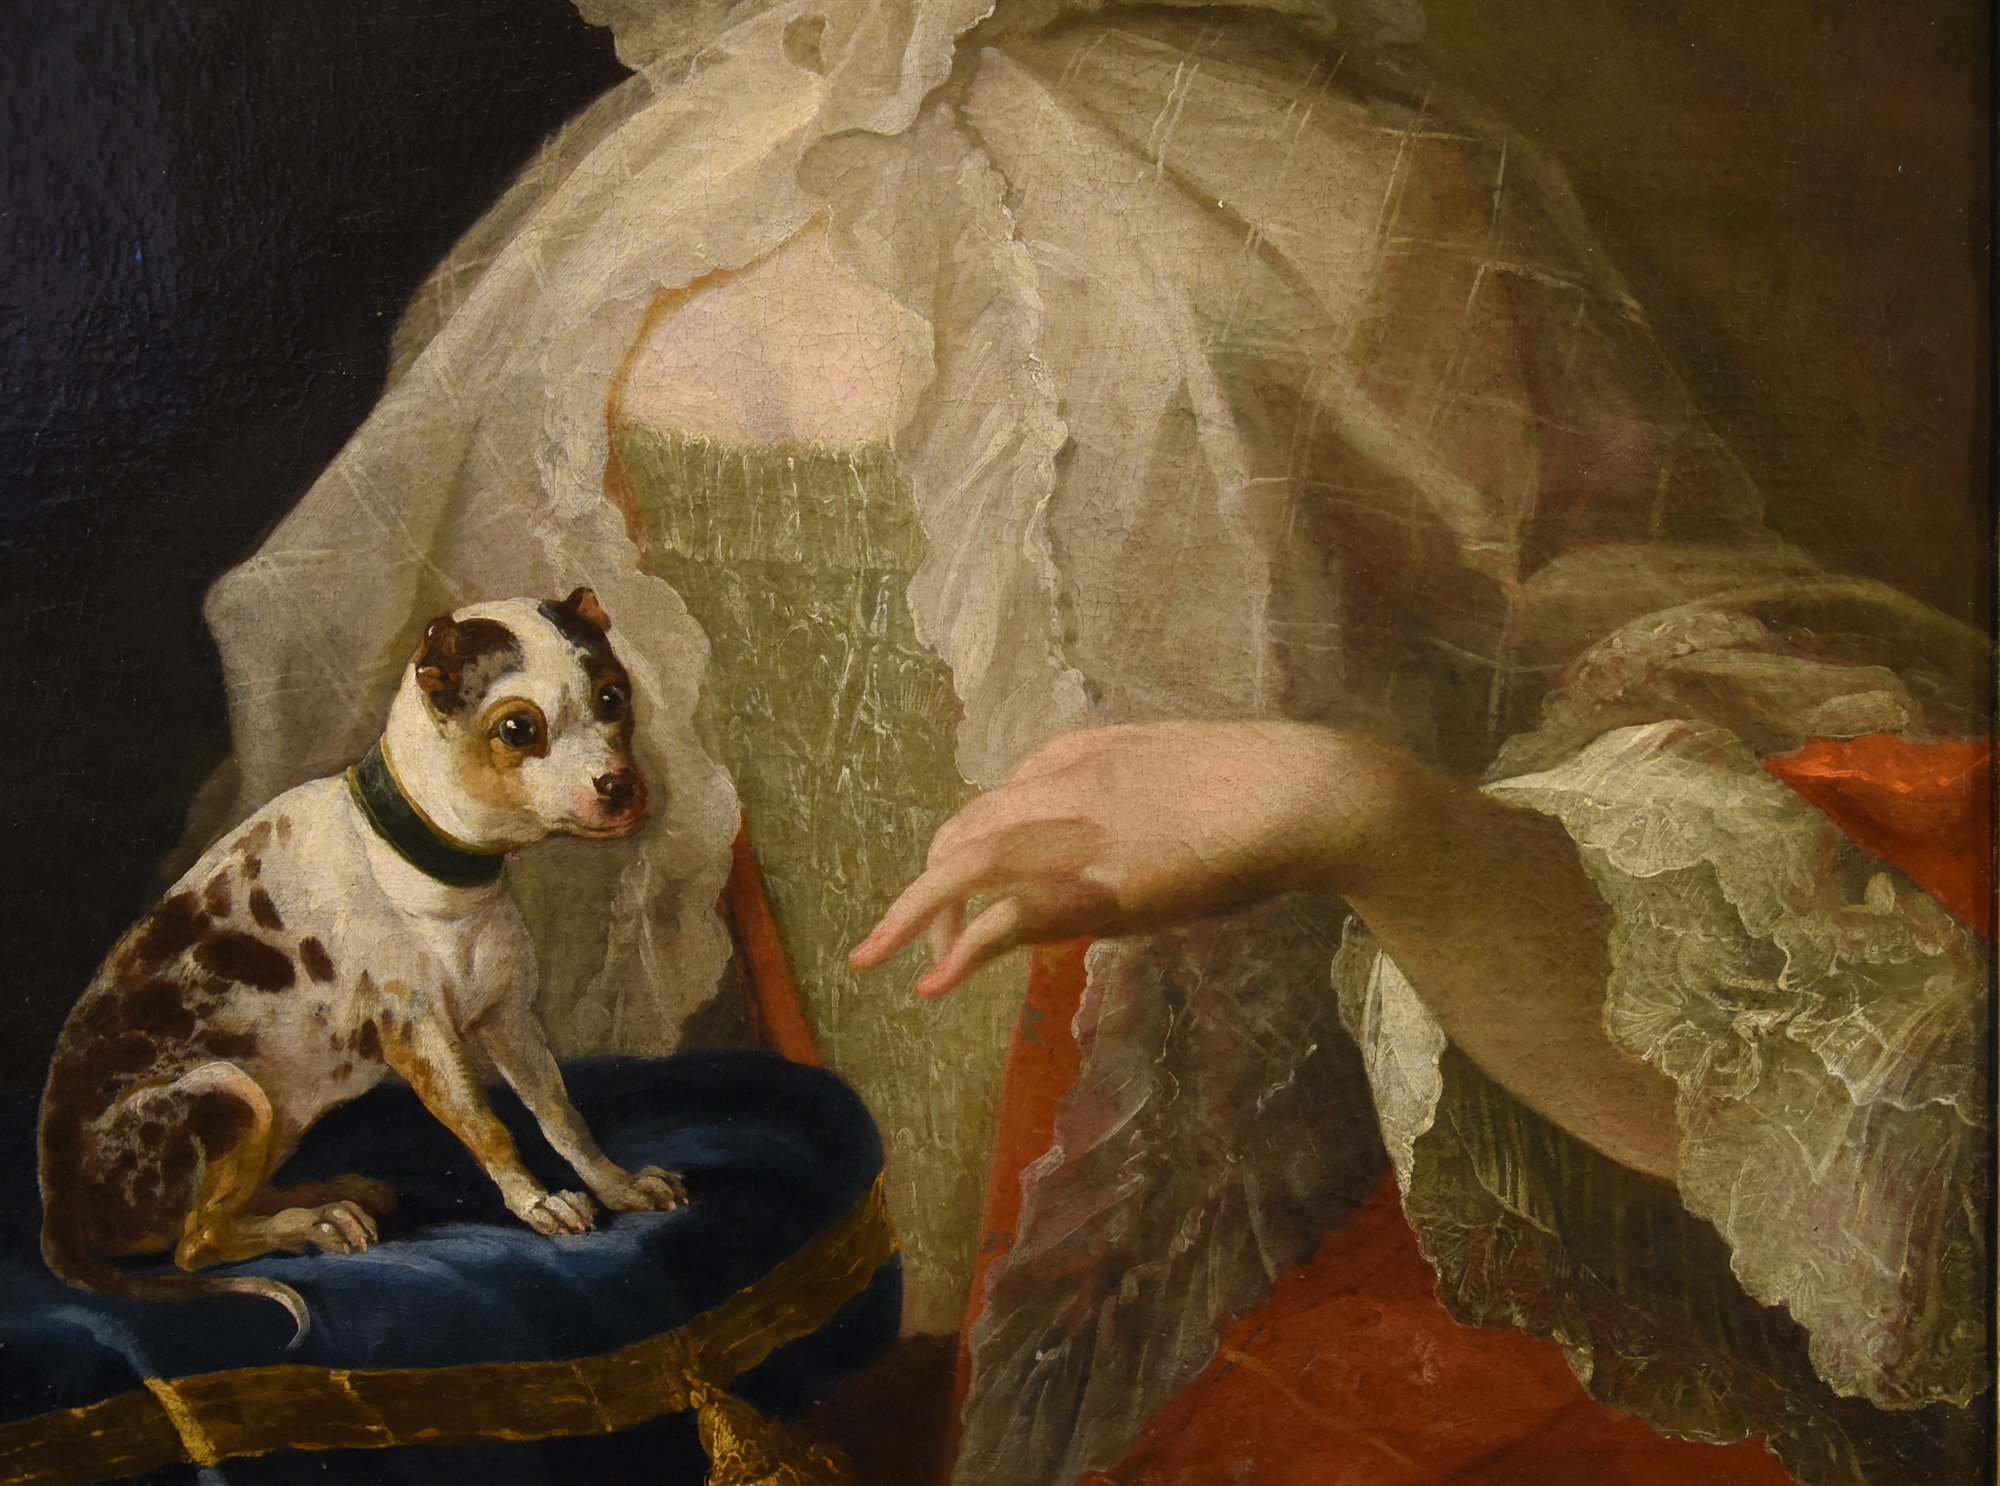 Ritratto di nobildonna con cagnolino